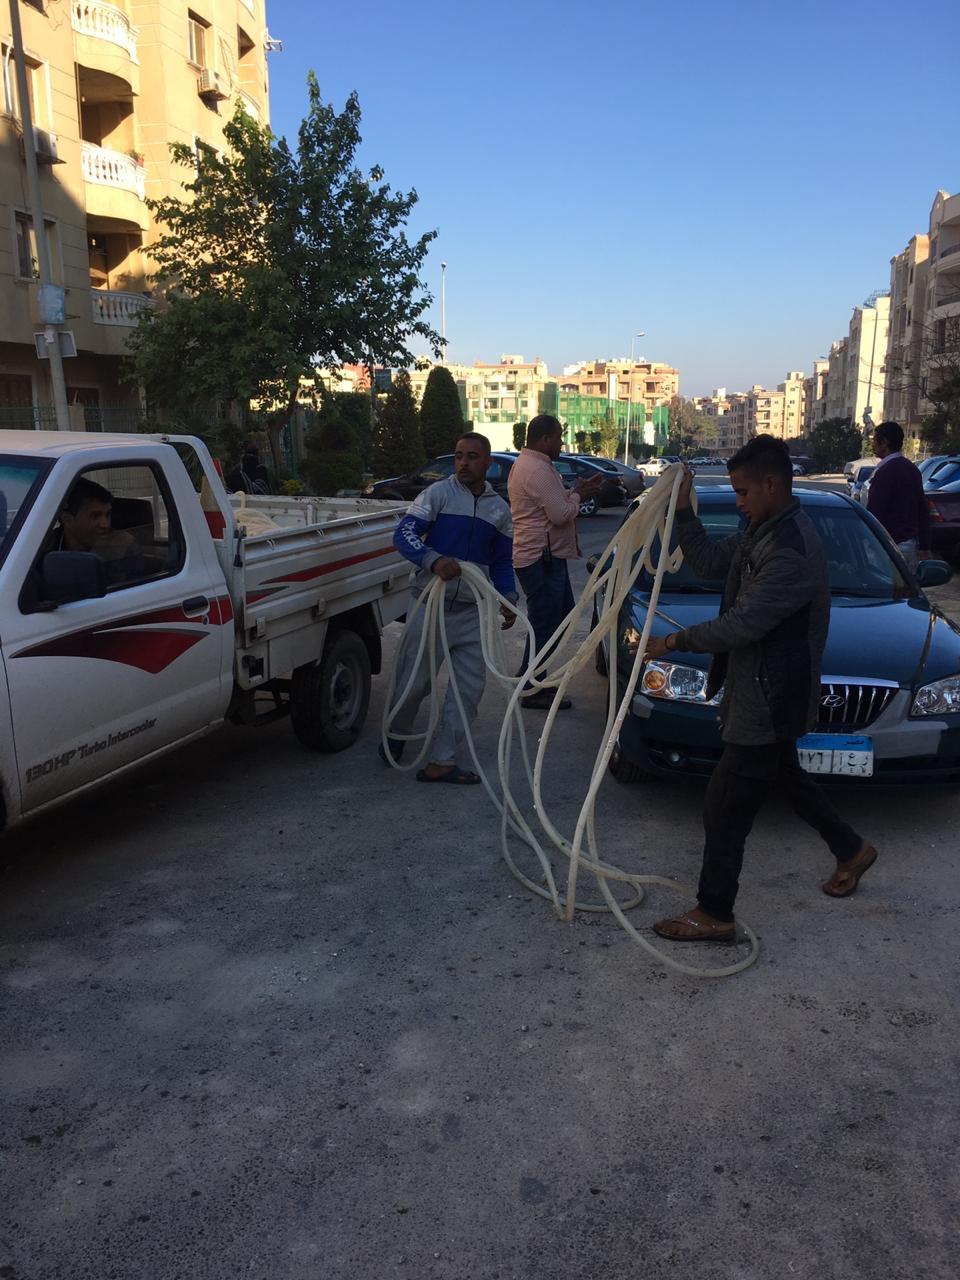   جهاز القاهرة الجديدة يشن حملة لضبط مخالفات غسيل السيارات بالشوارع الرئيسية  